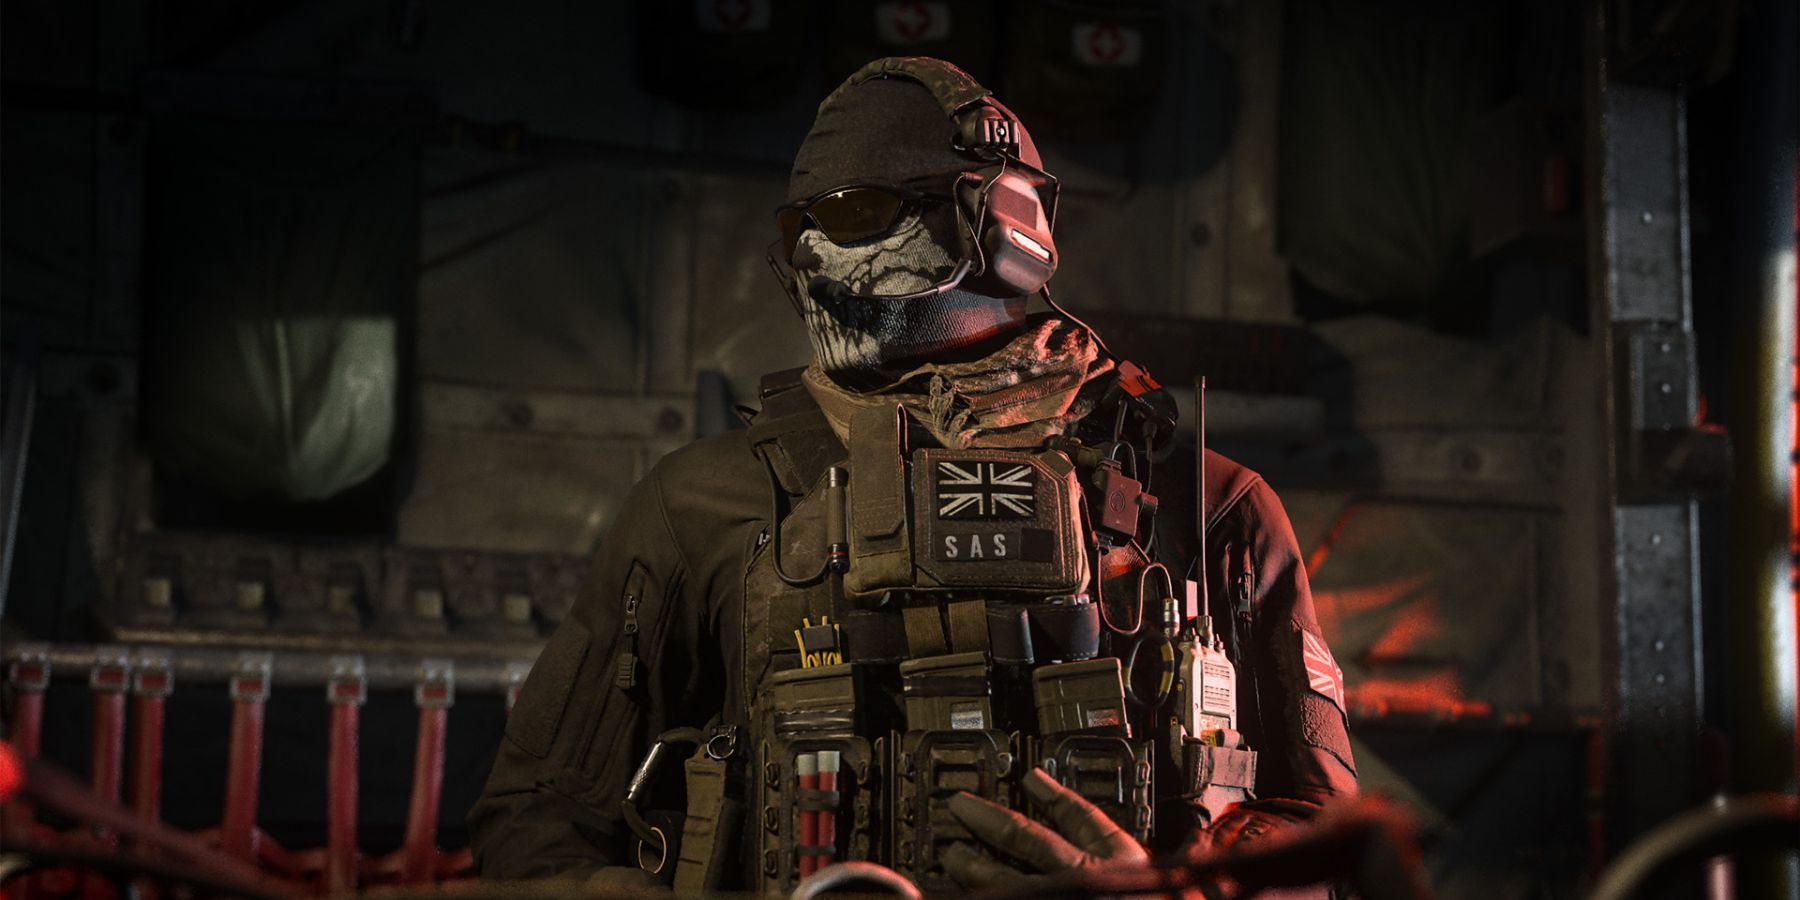 Call of Duty Modern Warfare 3 : 1er trailer pour cette suite épique et innovante